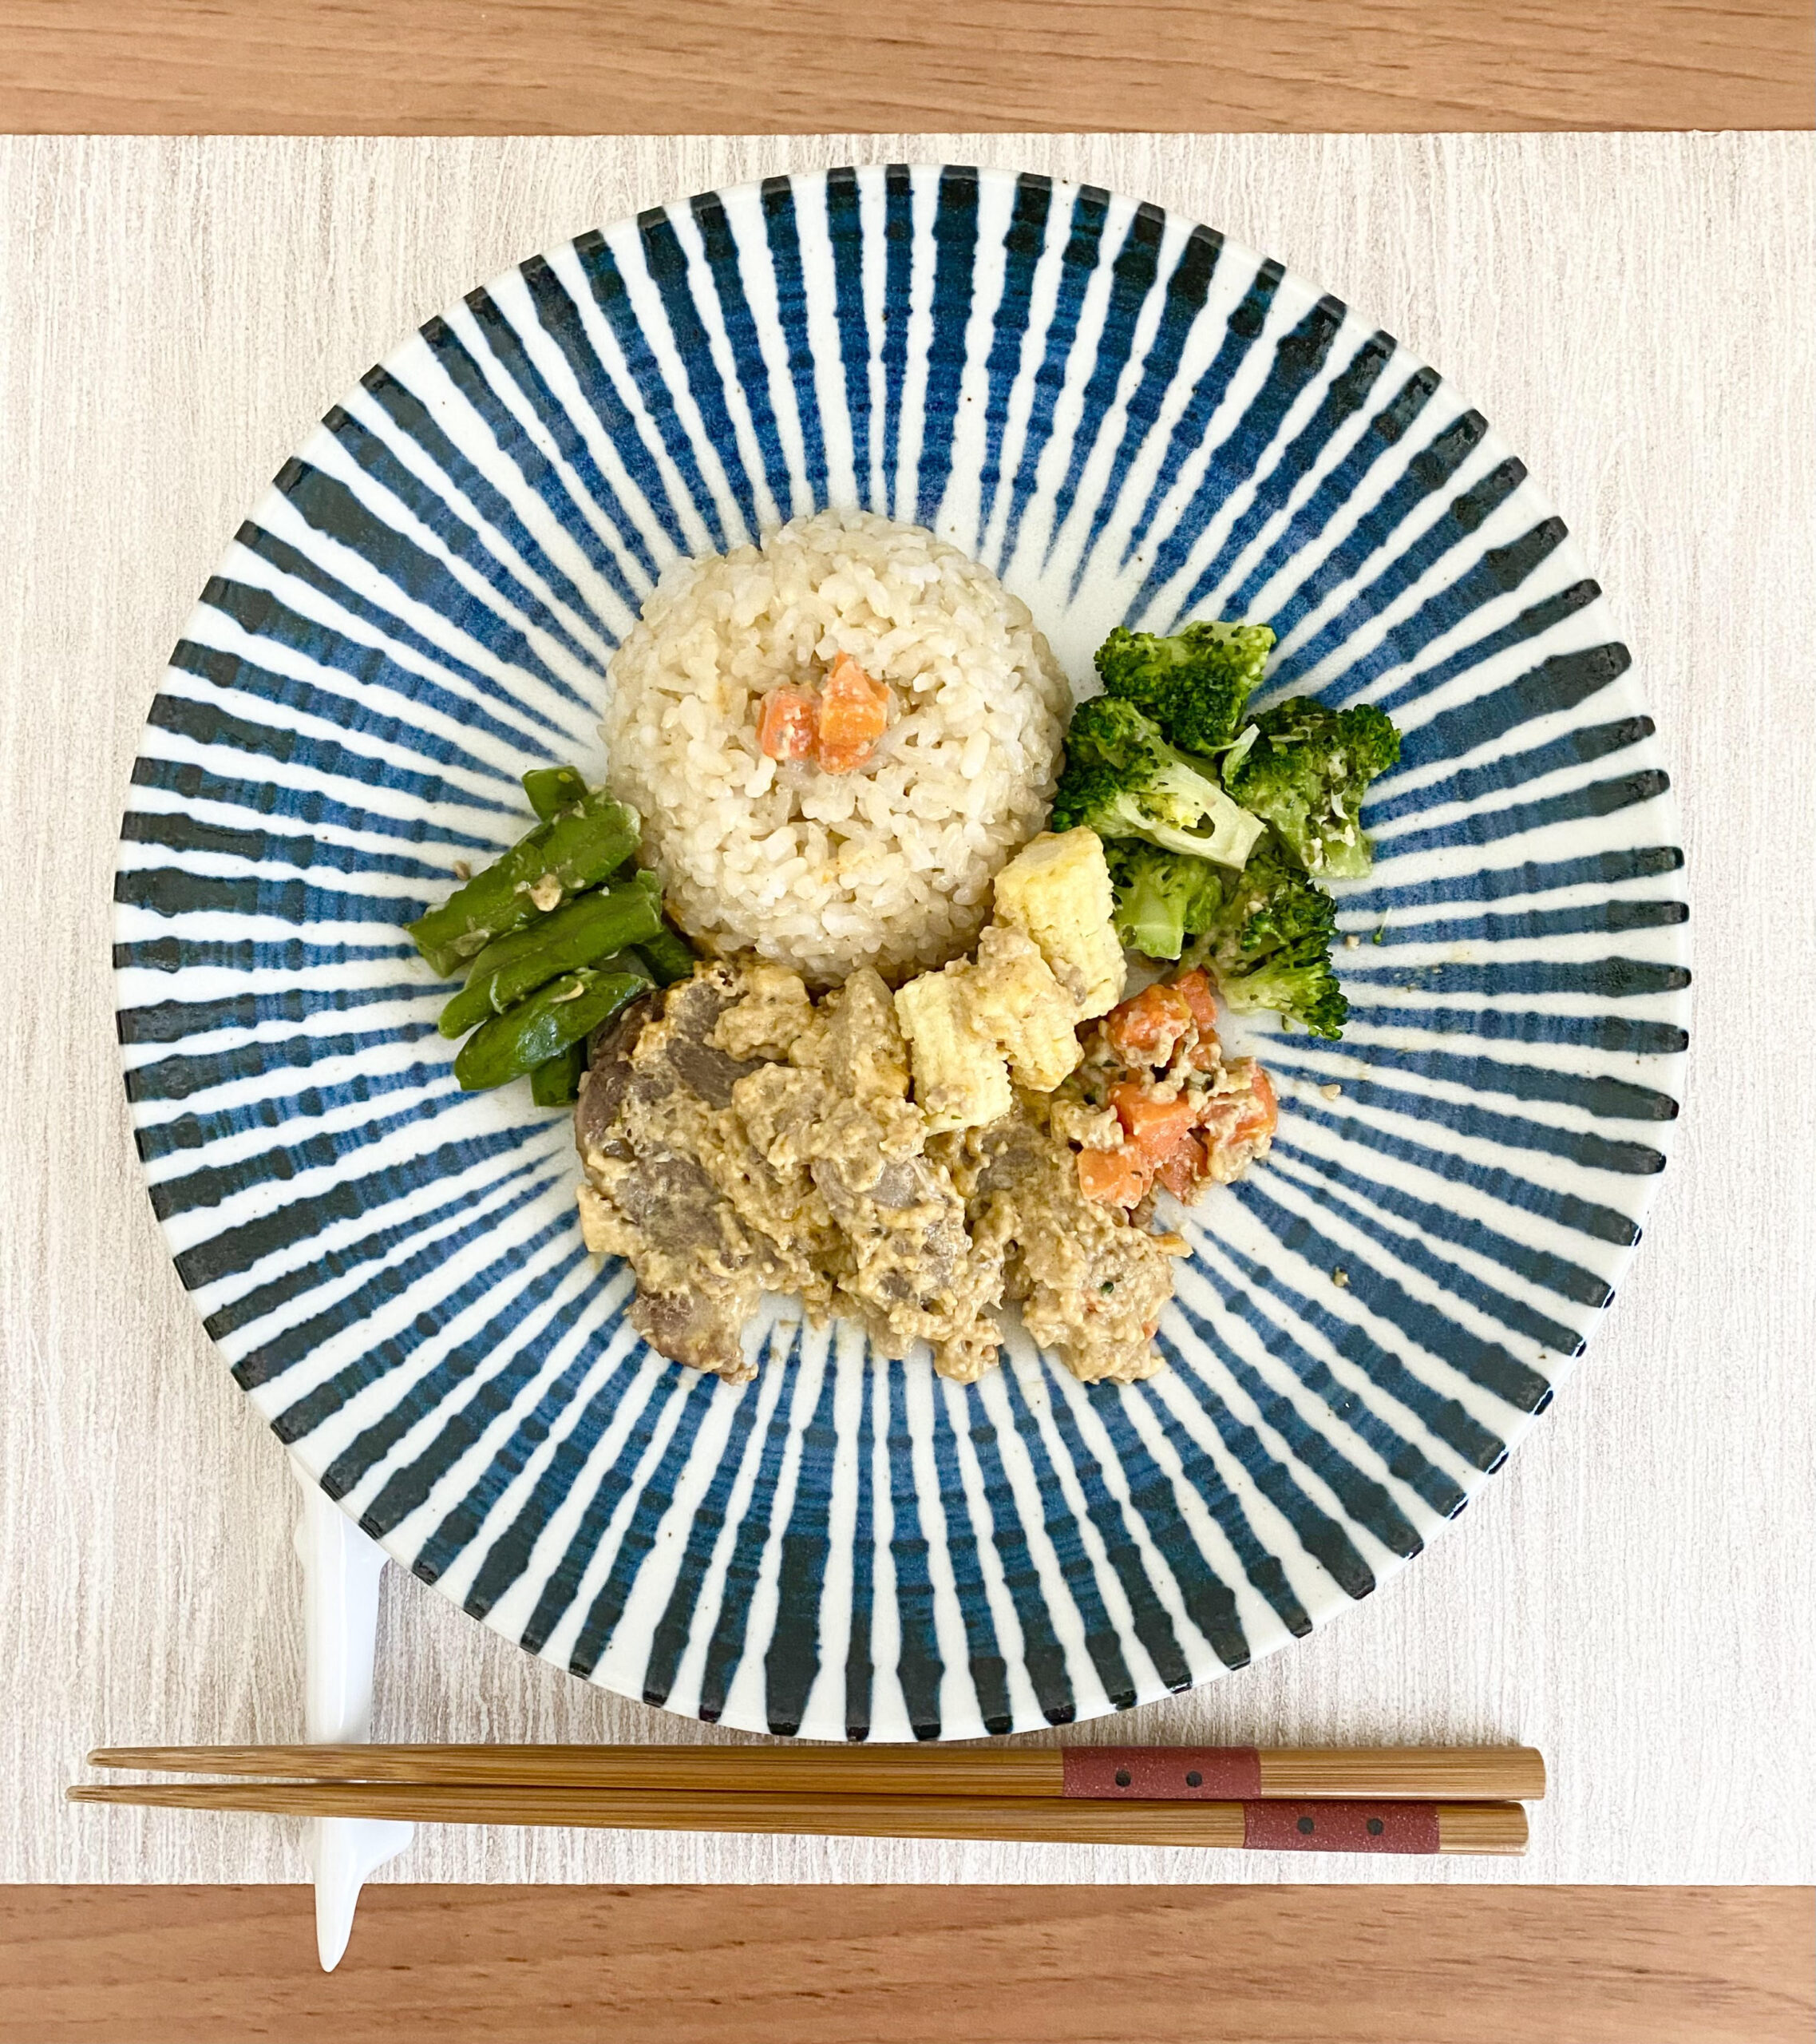 FIT FOOD HOME_低糖質VEGE＋_ポークソテーマッシュルームソース+玄米_盛り付け後